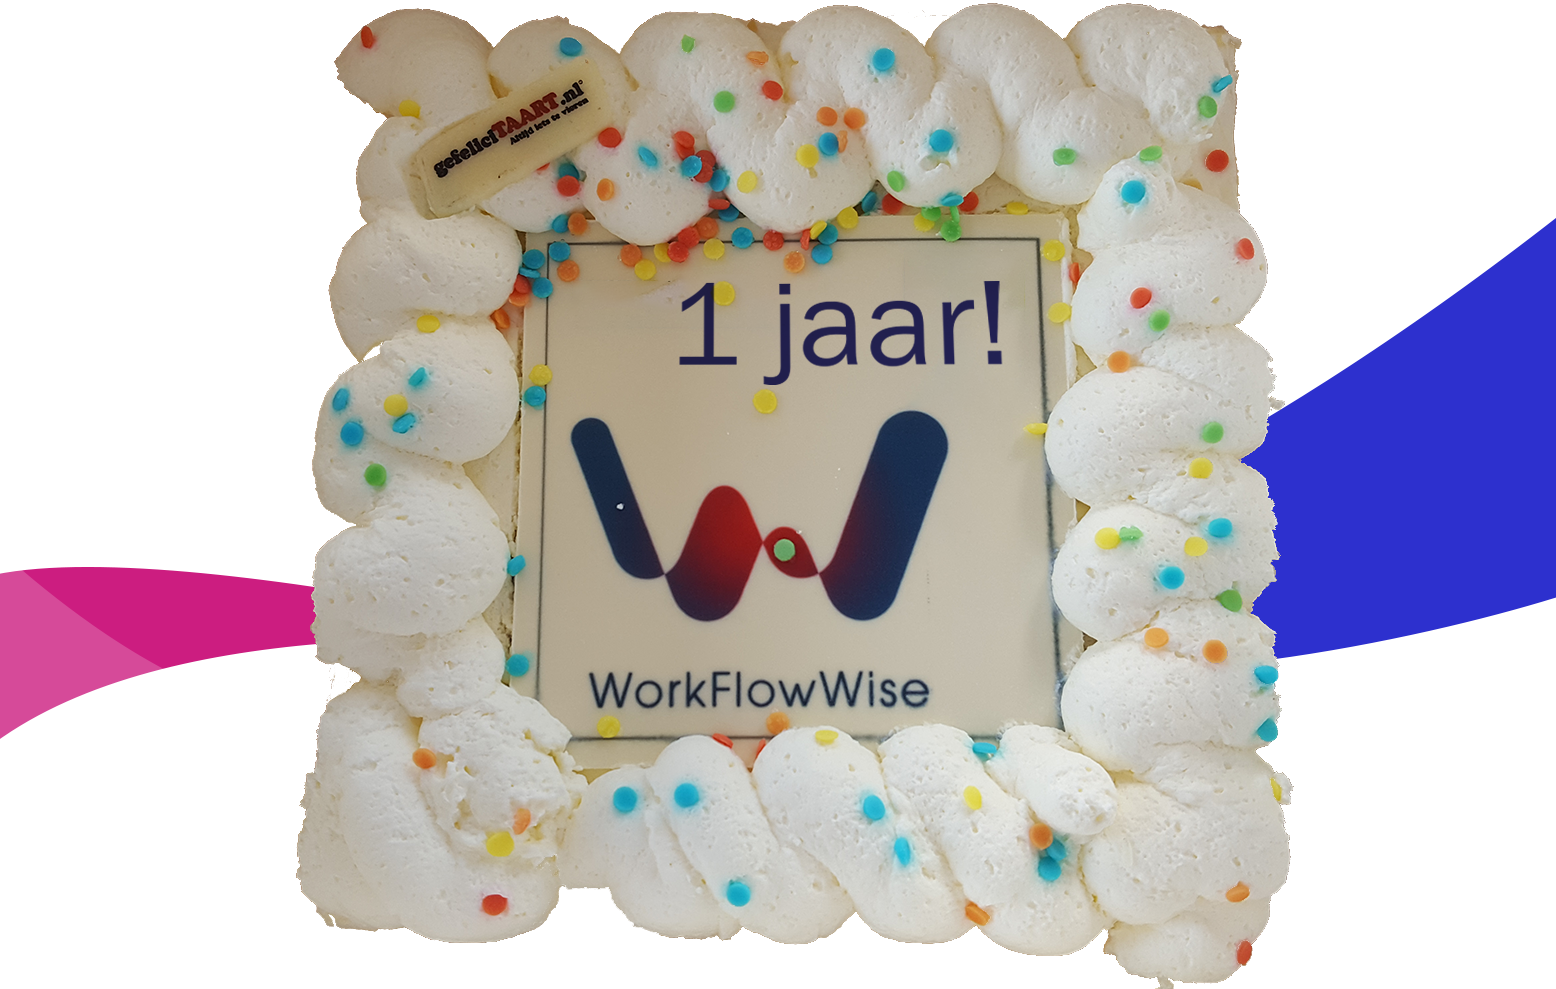 WorkFlowWise viert groots haar eerste verjaardag